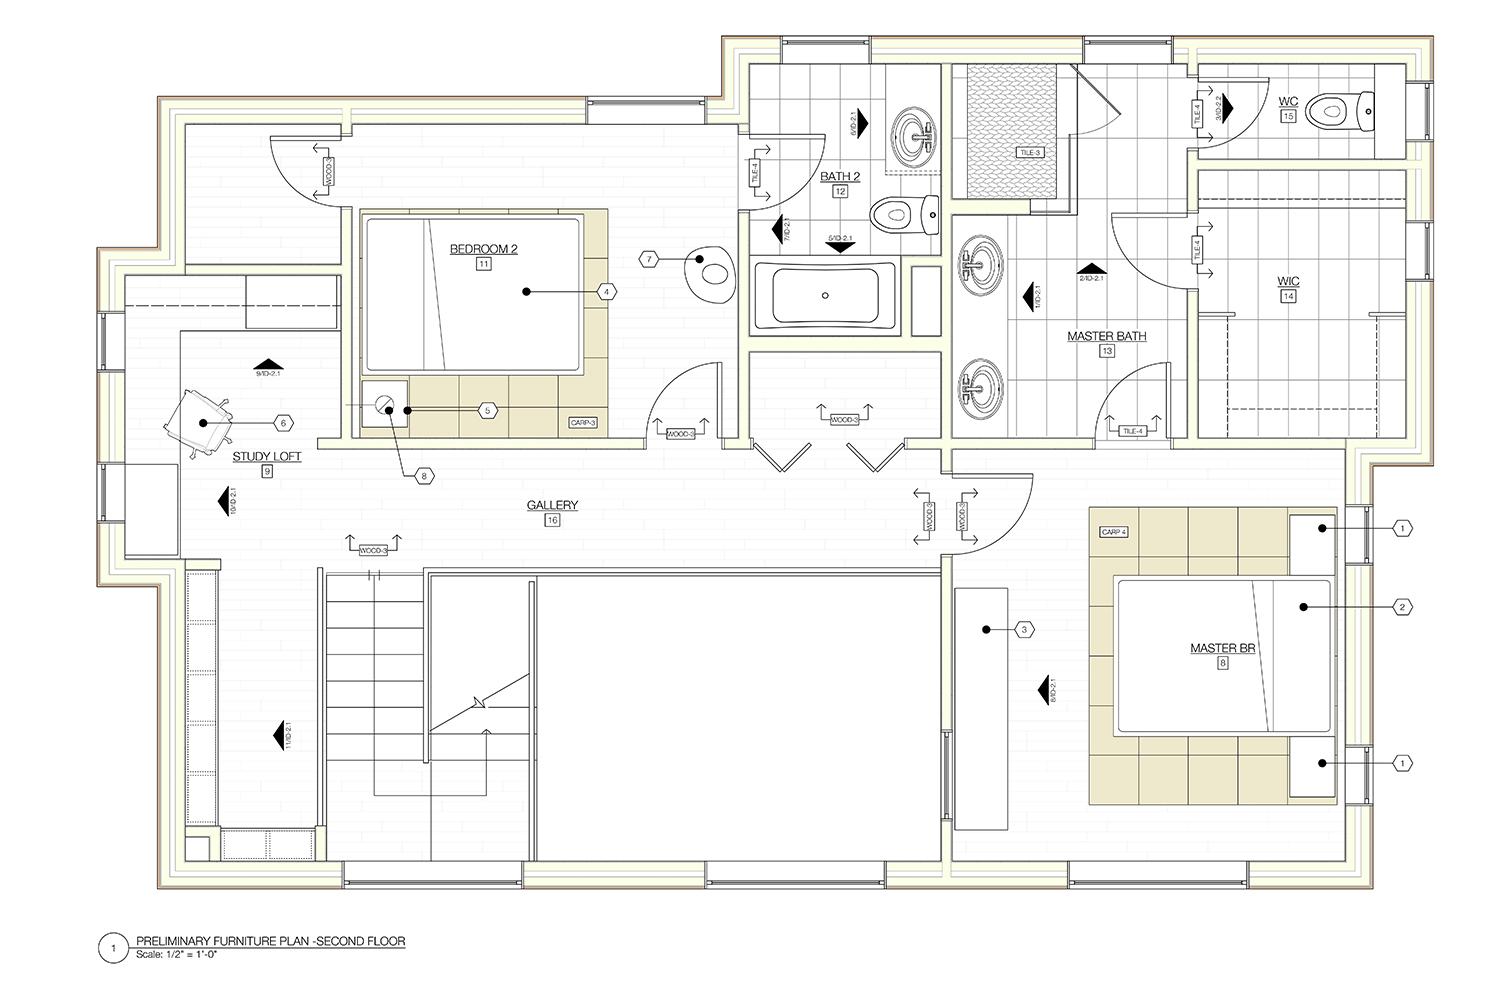 honda smart home inside us interior design plans 2